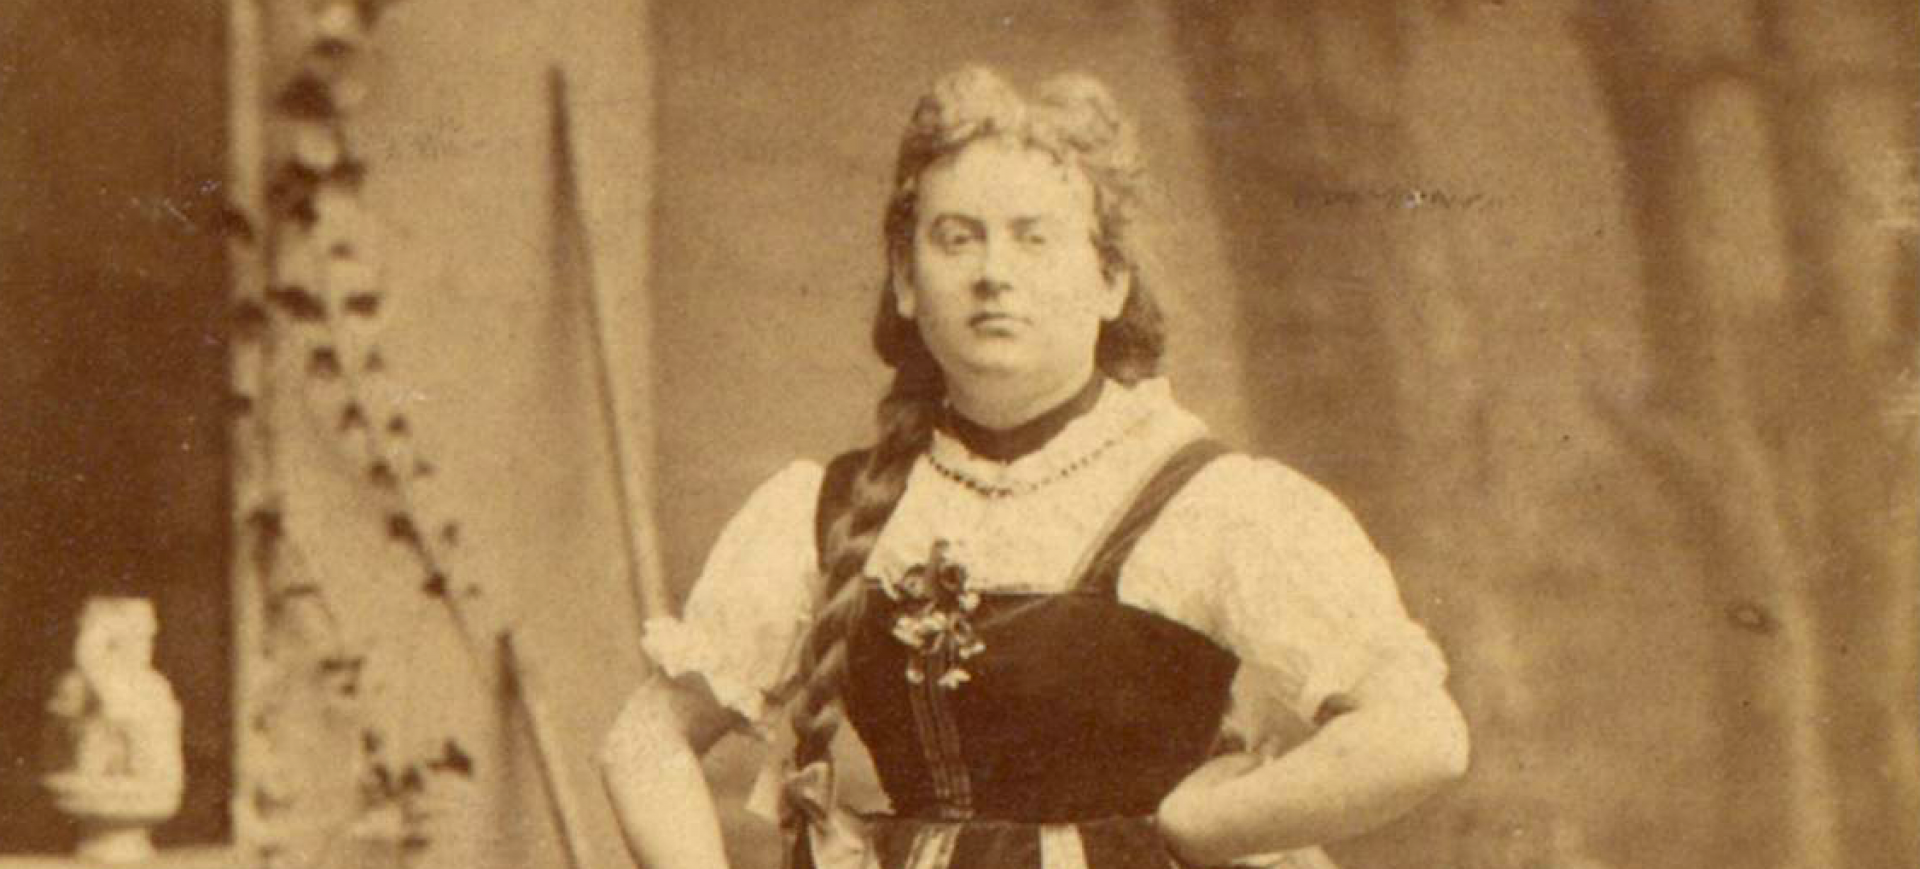 Jan un Griet - Divertissementchen 1877 - Darsteller in Damenrolle